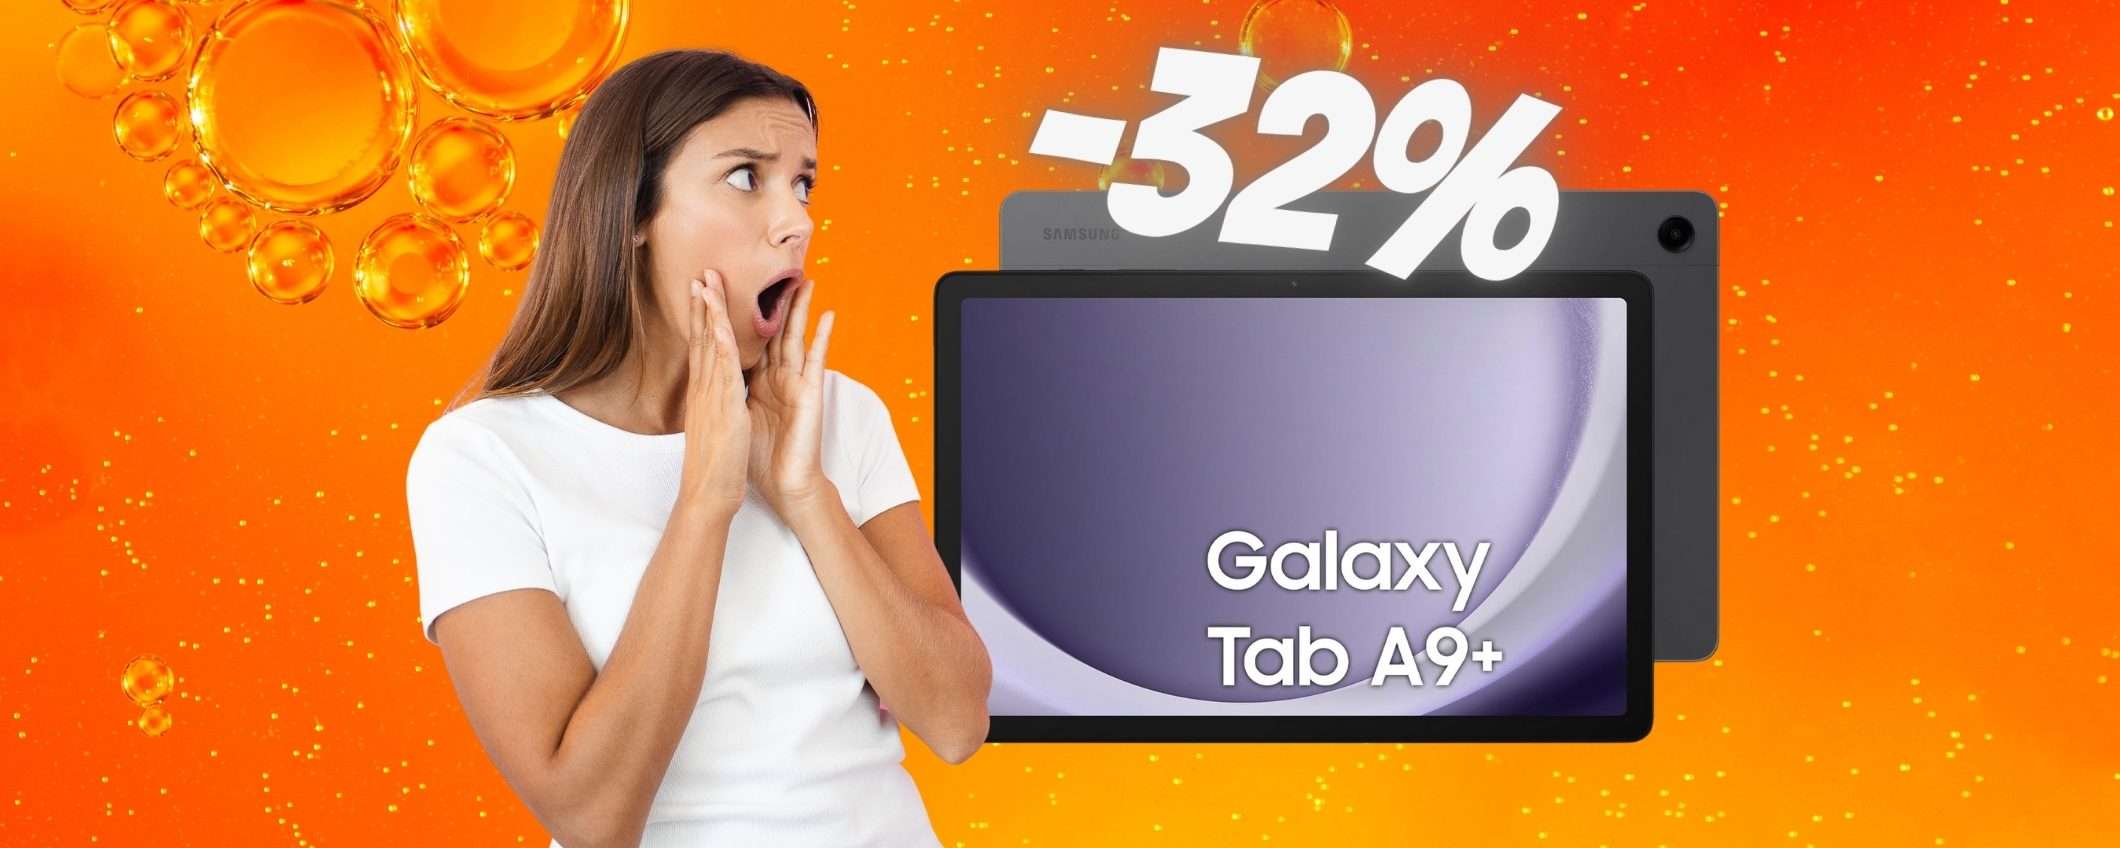 Samsung Galaxy Tab A9+ a PREZZO REGALO su Amazon (-32%)